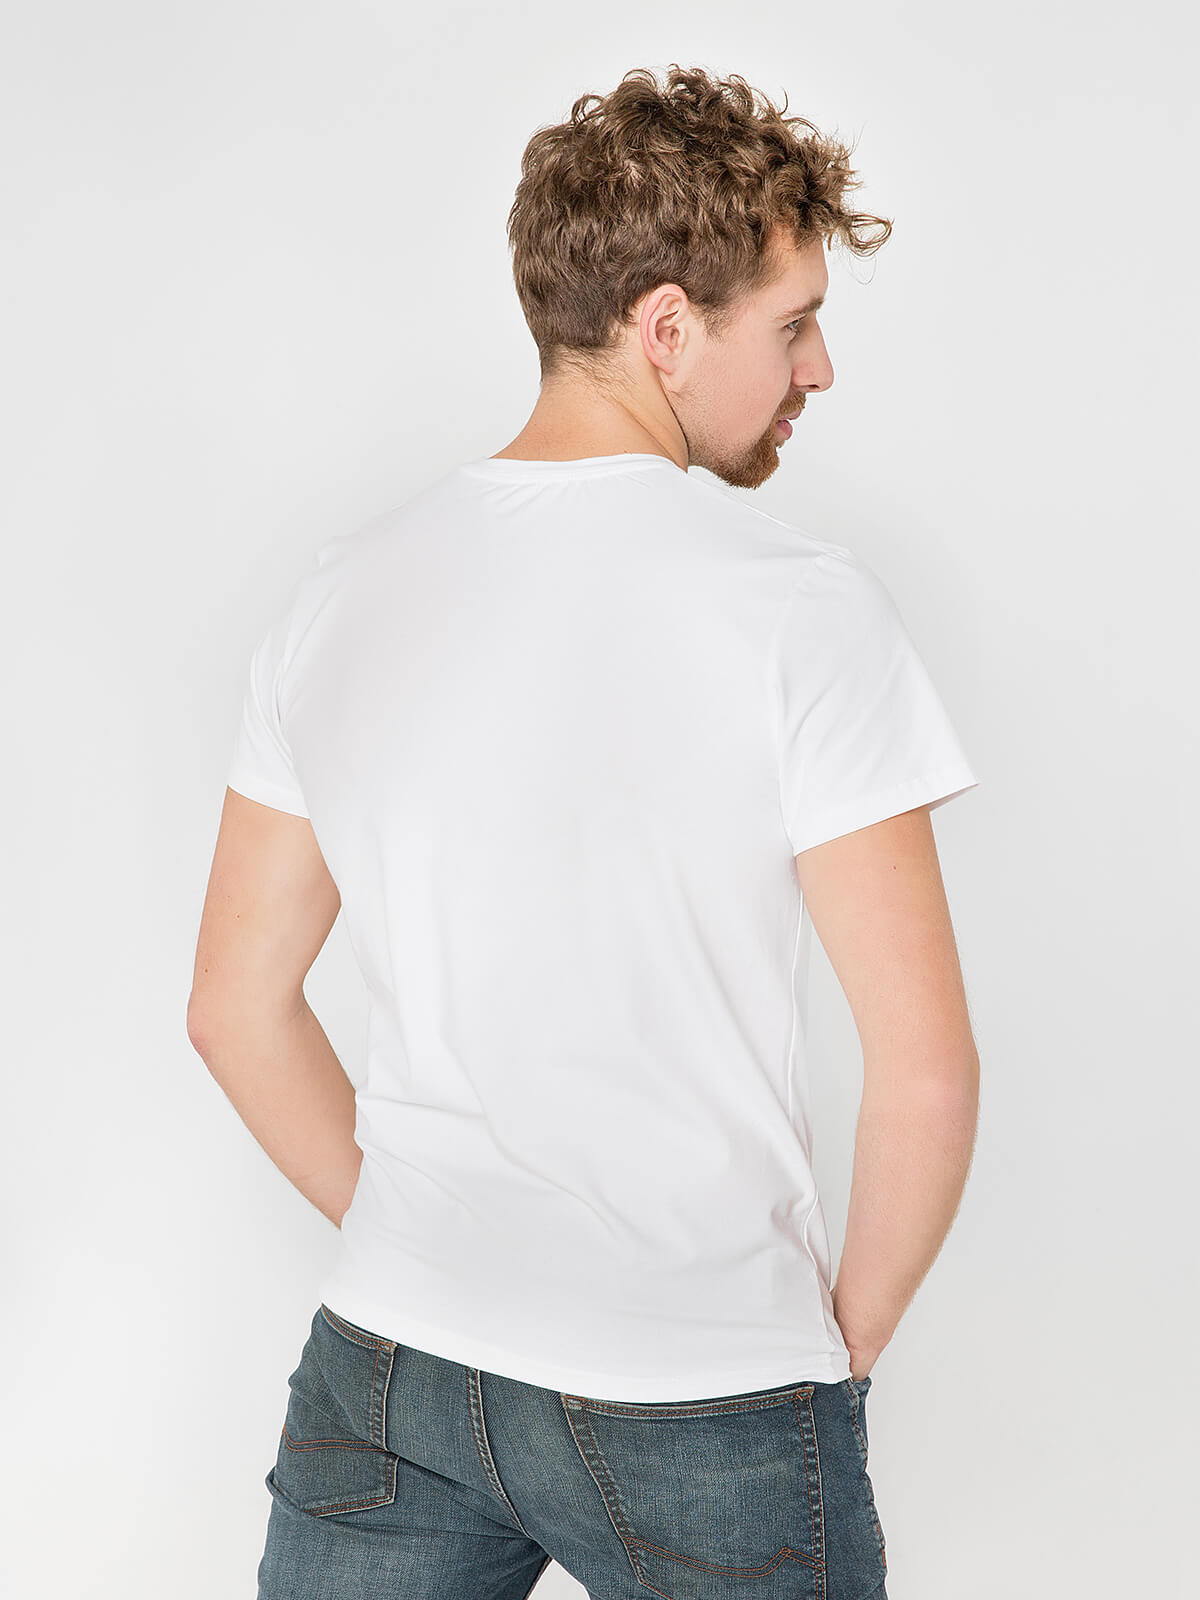 Men's T-Shirt Falcon. Color white. 1.